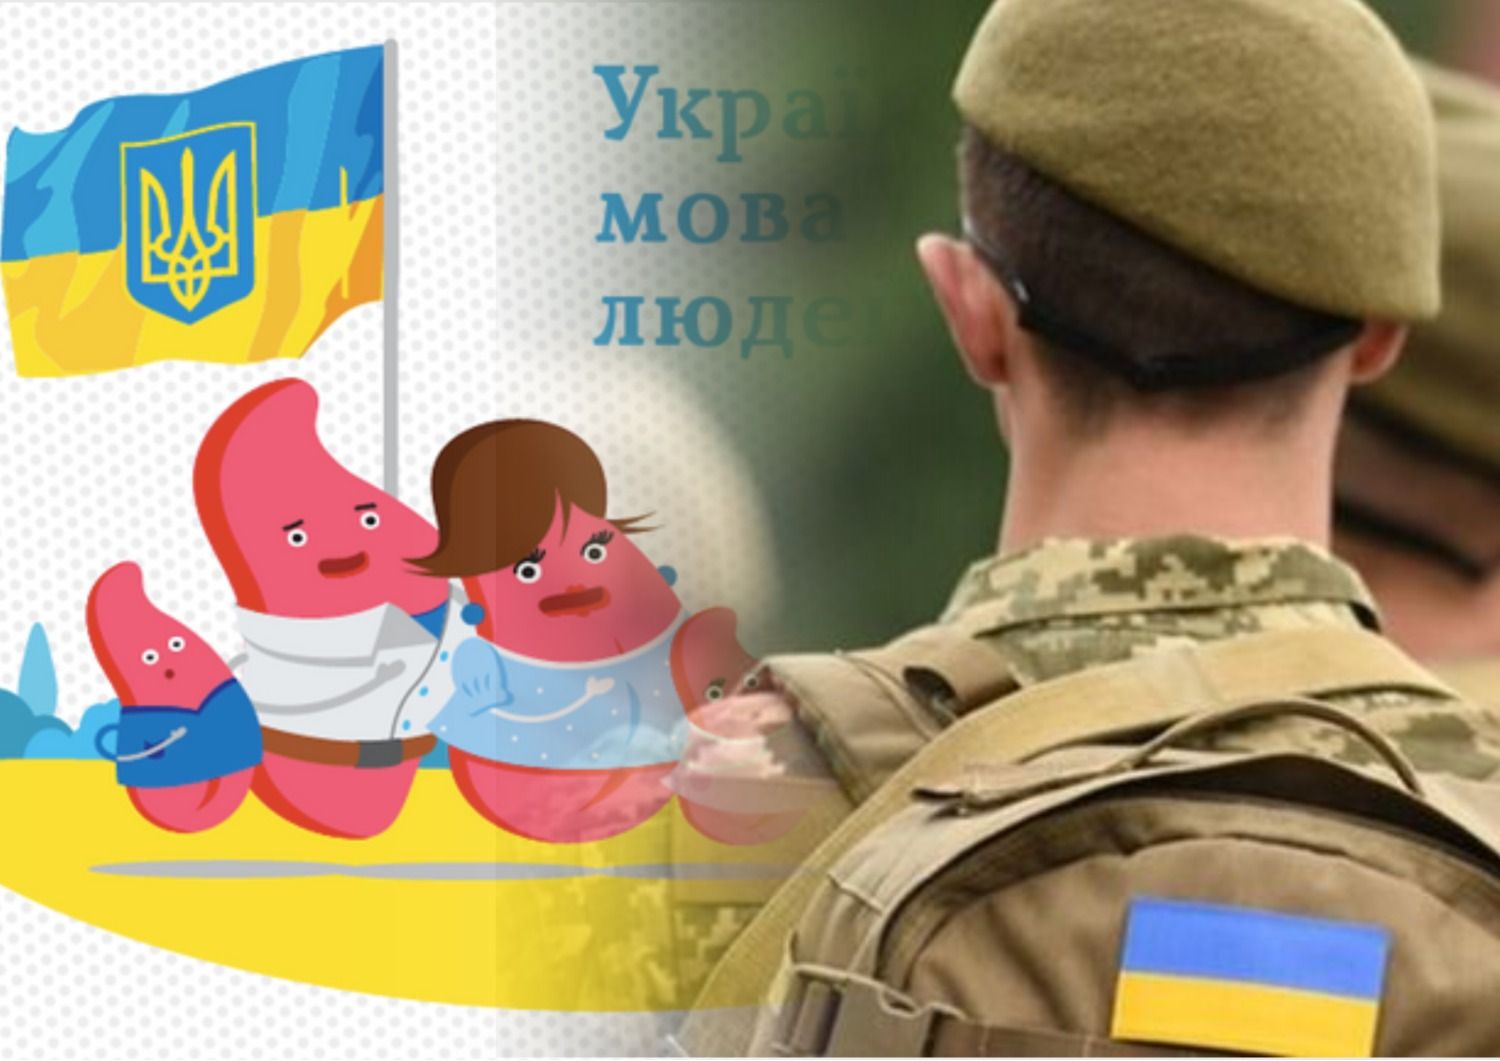 Антисуржик - мобілізація в Україні - як правильно говорити українською про мобілізацію - Освіта